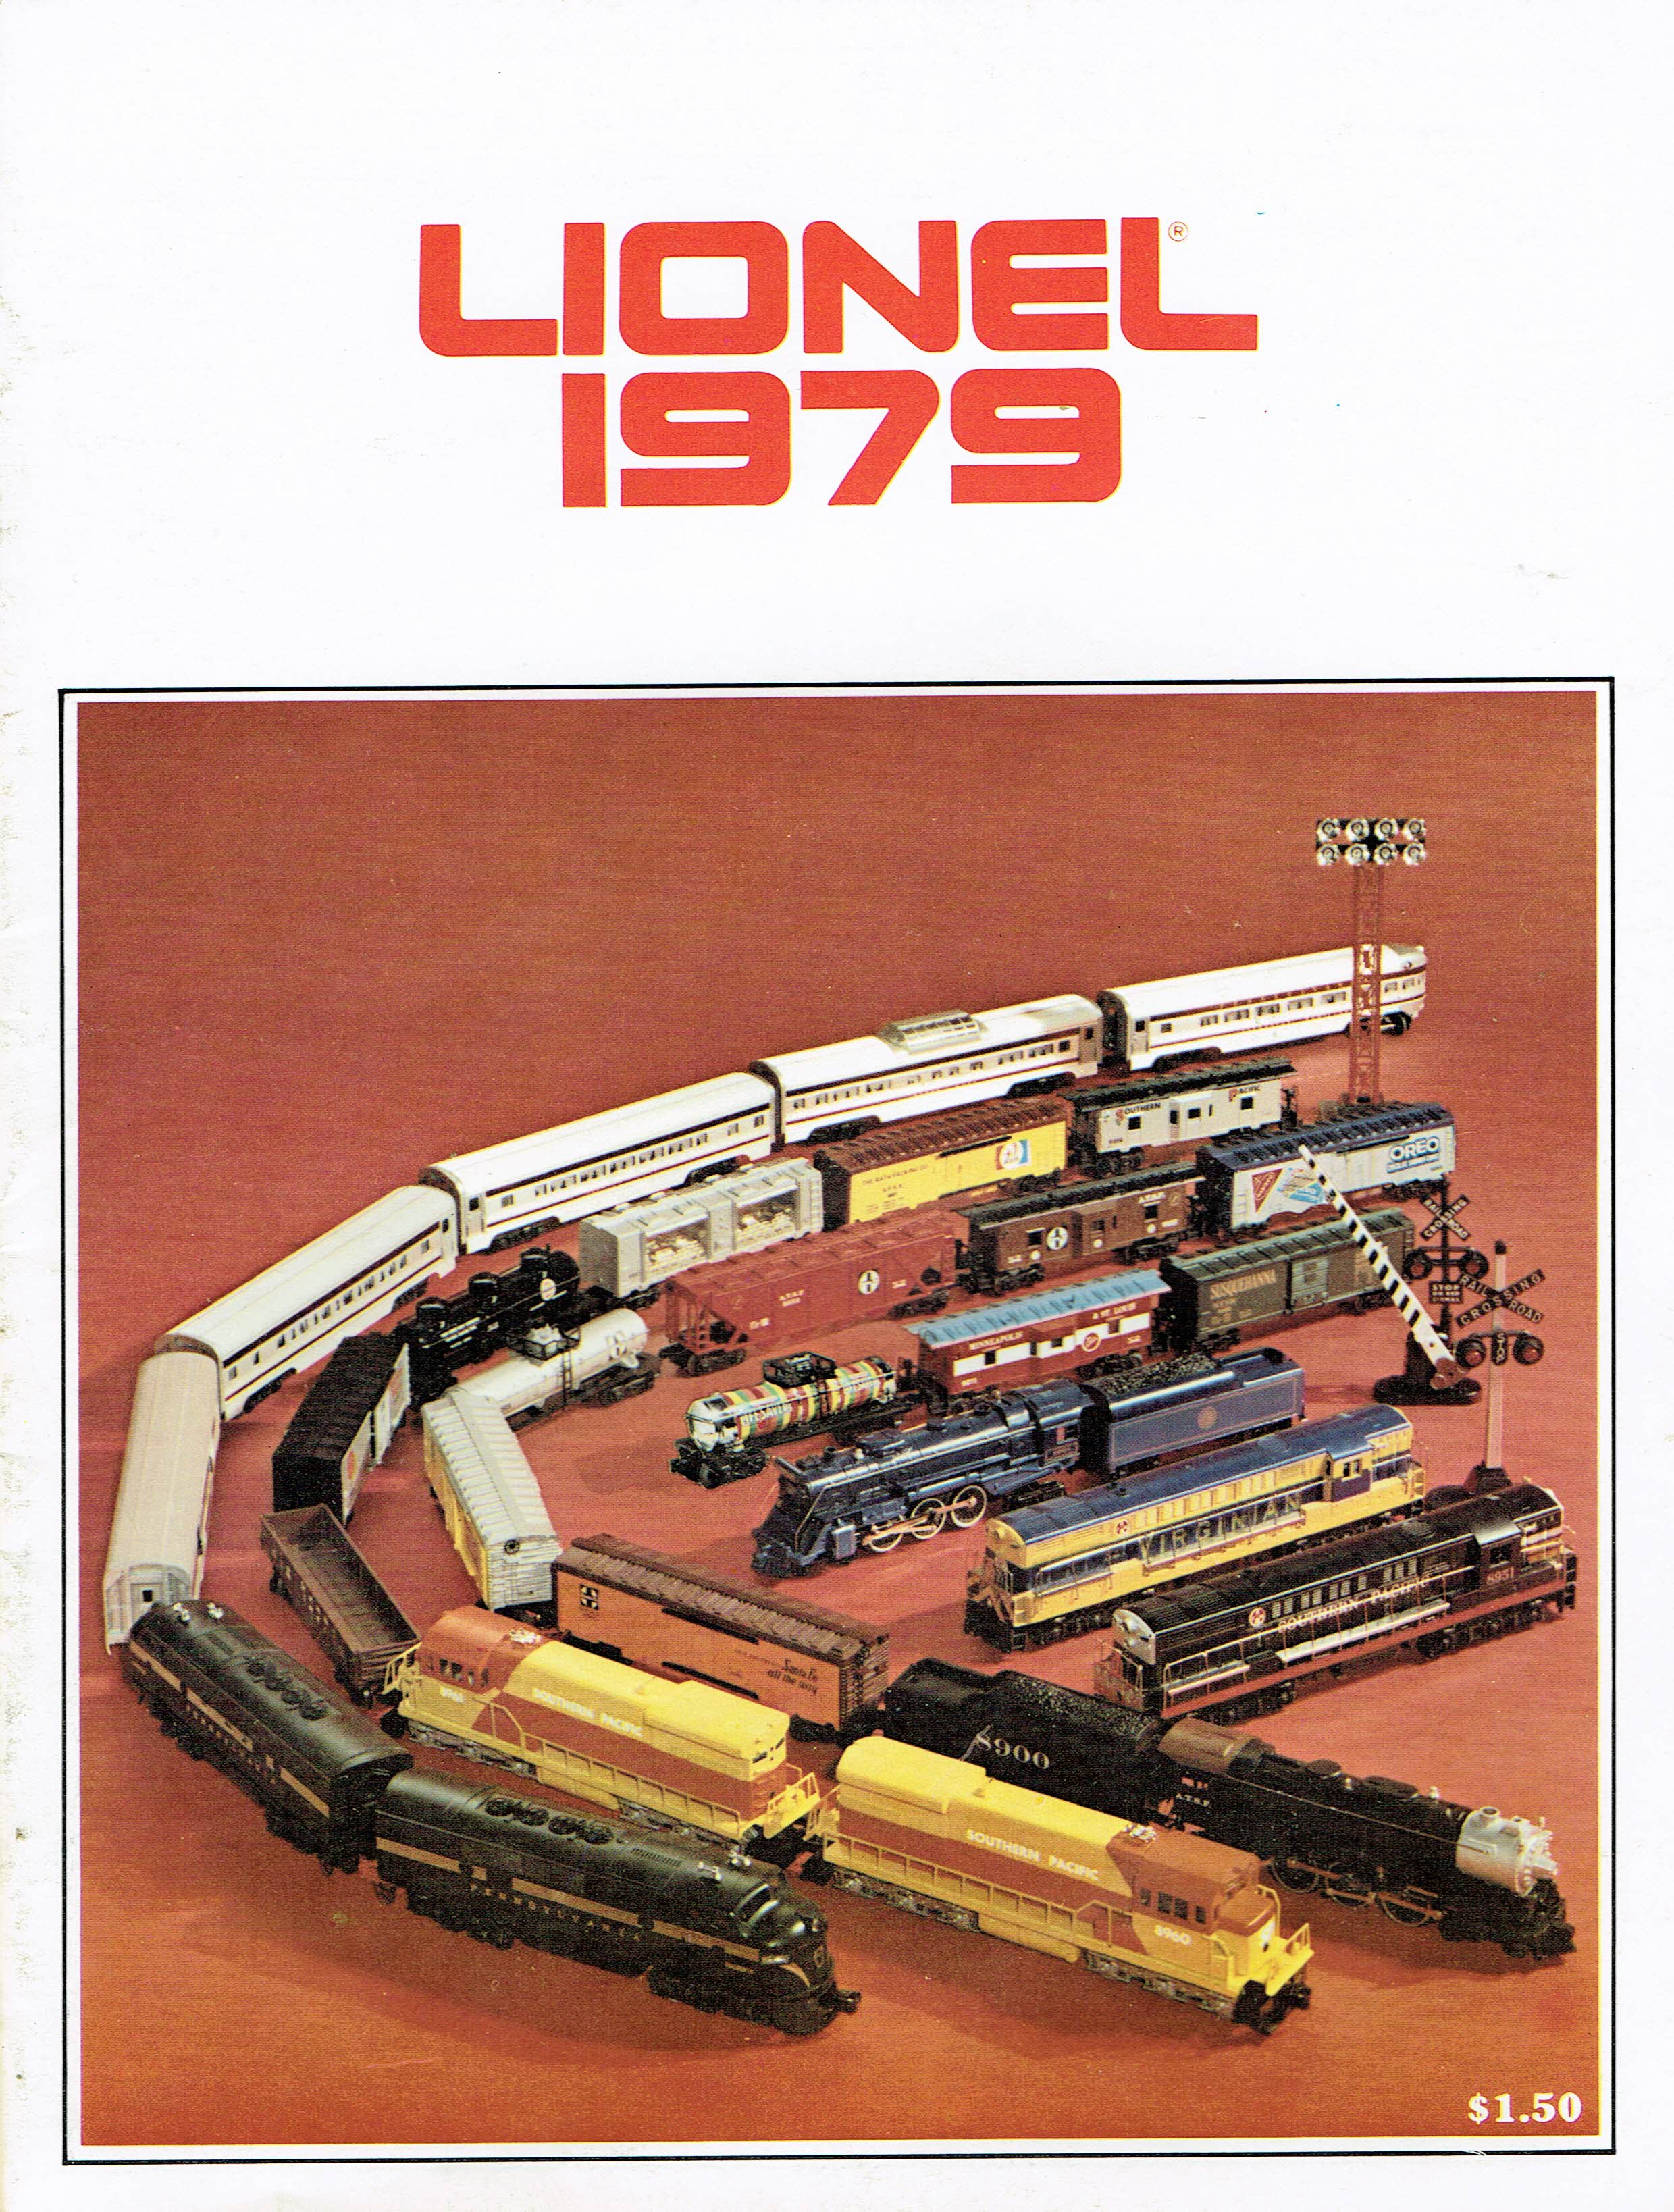 Lionel 1979 Catalog image